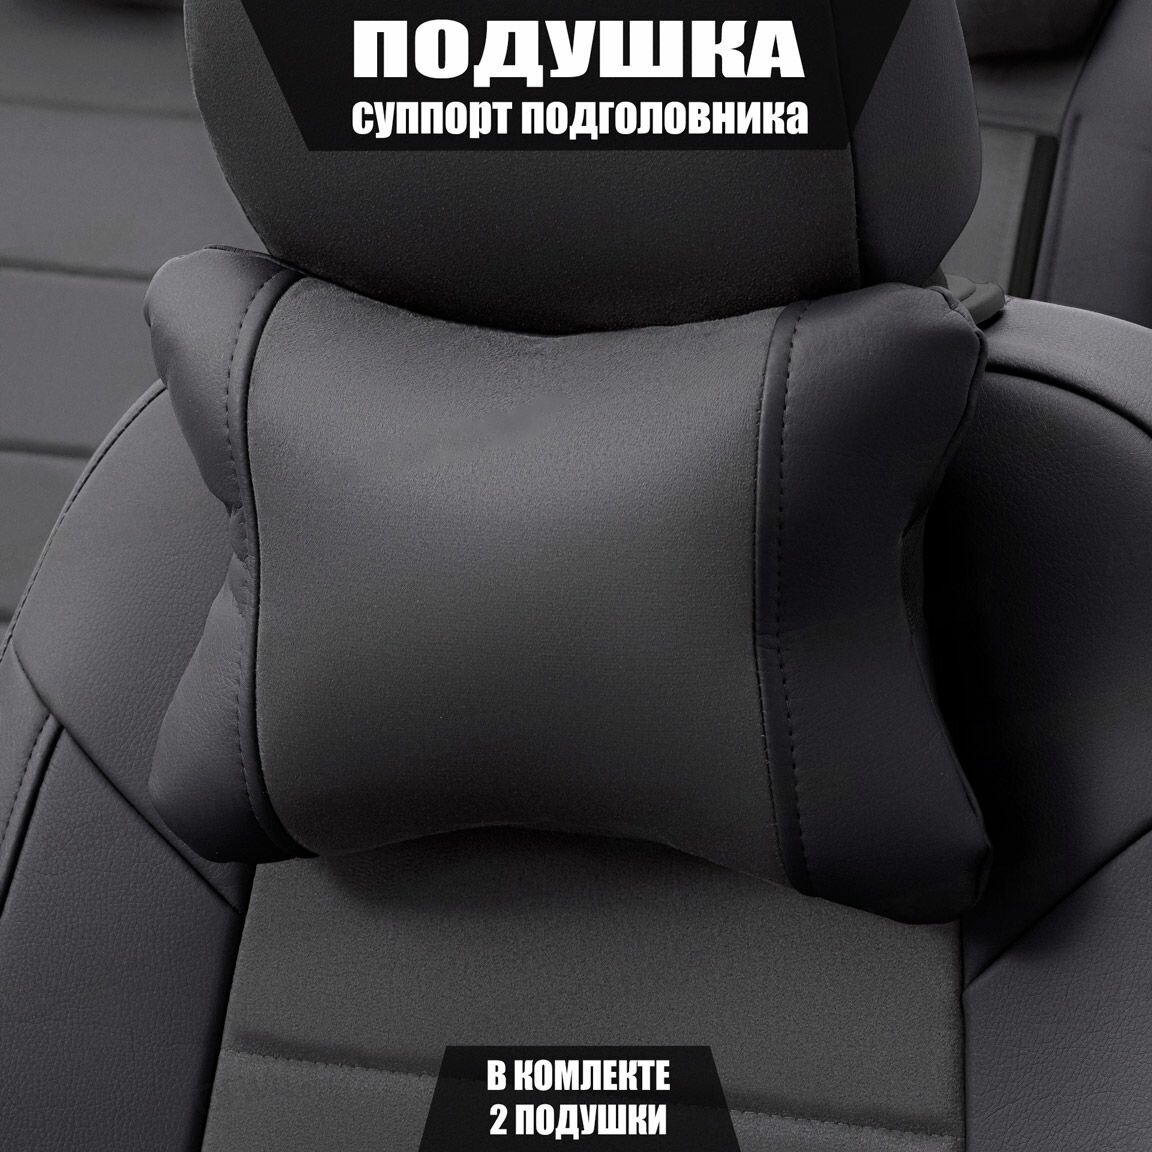 Подушки под шею (суппорт подголовника) для Опель Мерива (2010 - 2014) компактвэн / Opel Meriva Алькантара 2 подушки Коричневый